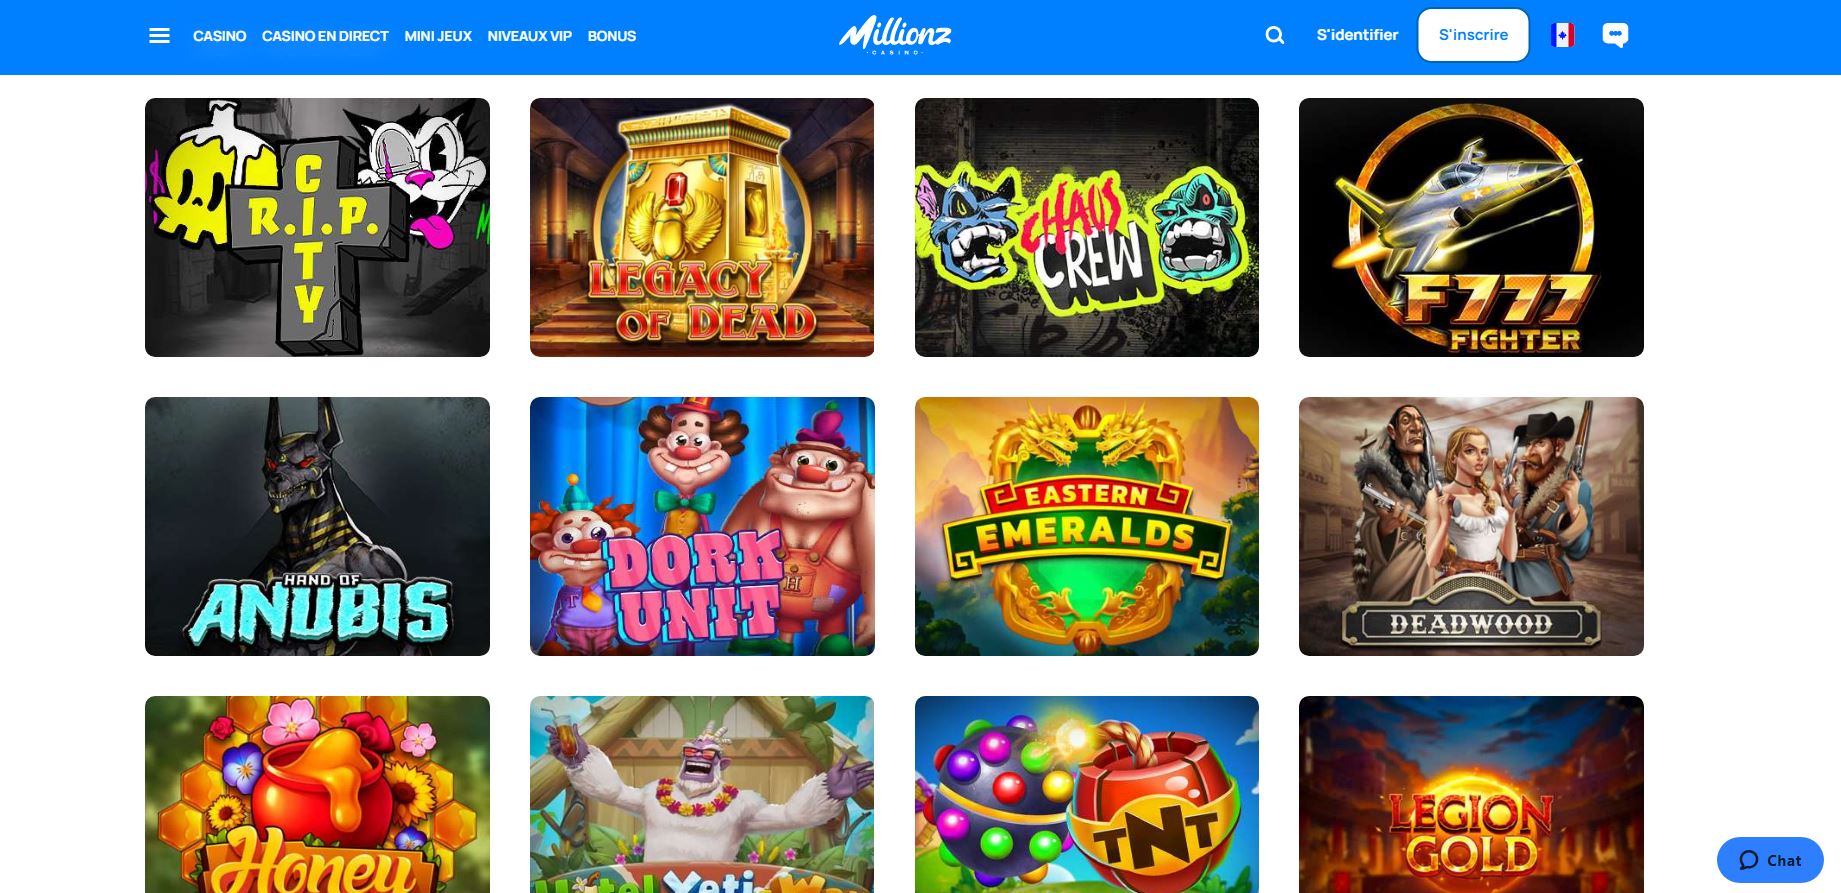 Millionz - Jeux - Casino en ligne argent réel